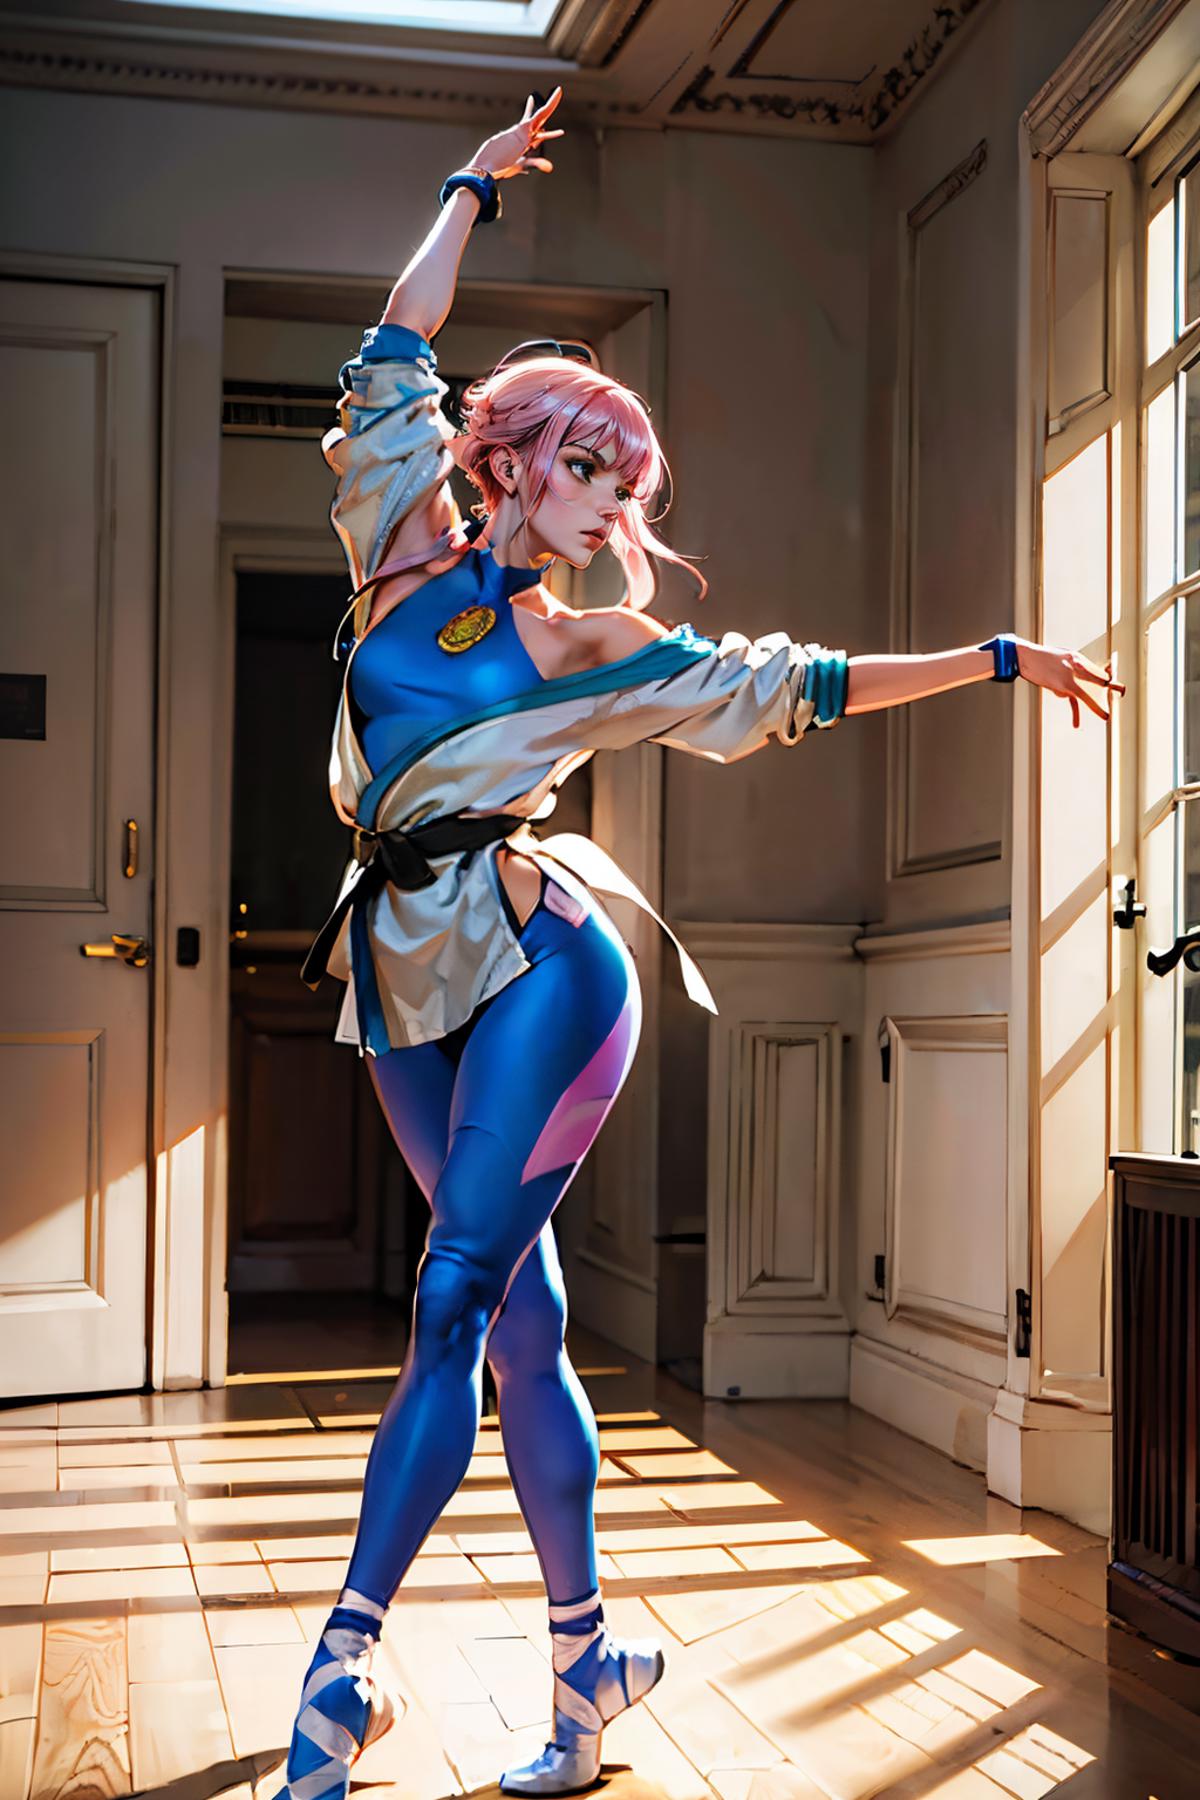 Manon (Street Fighter) LoRA image by wikkitikki